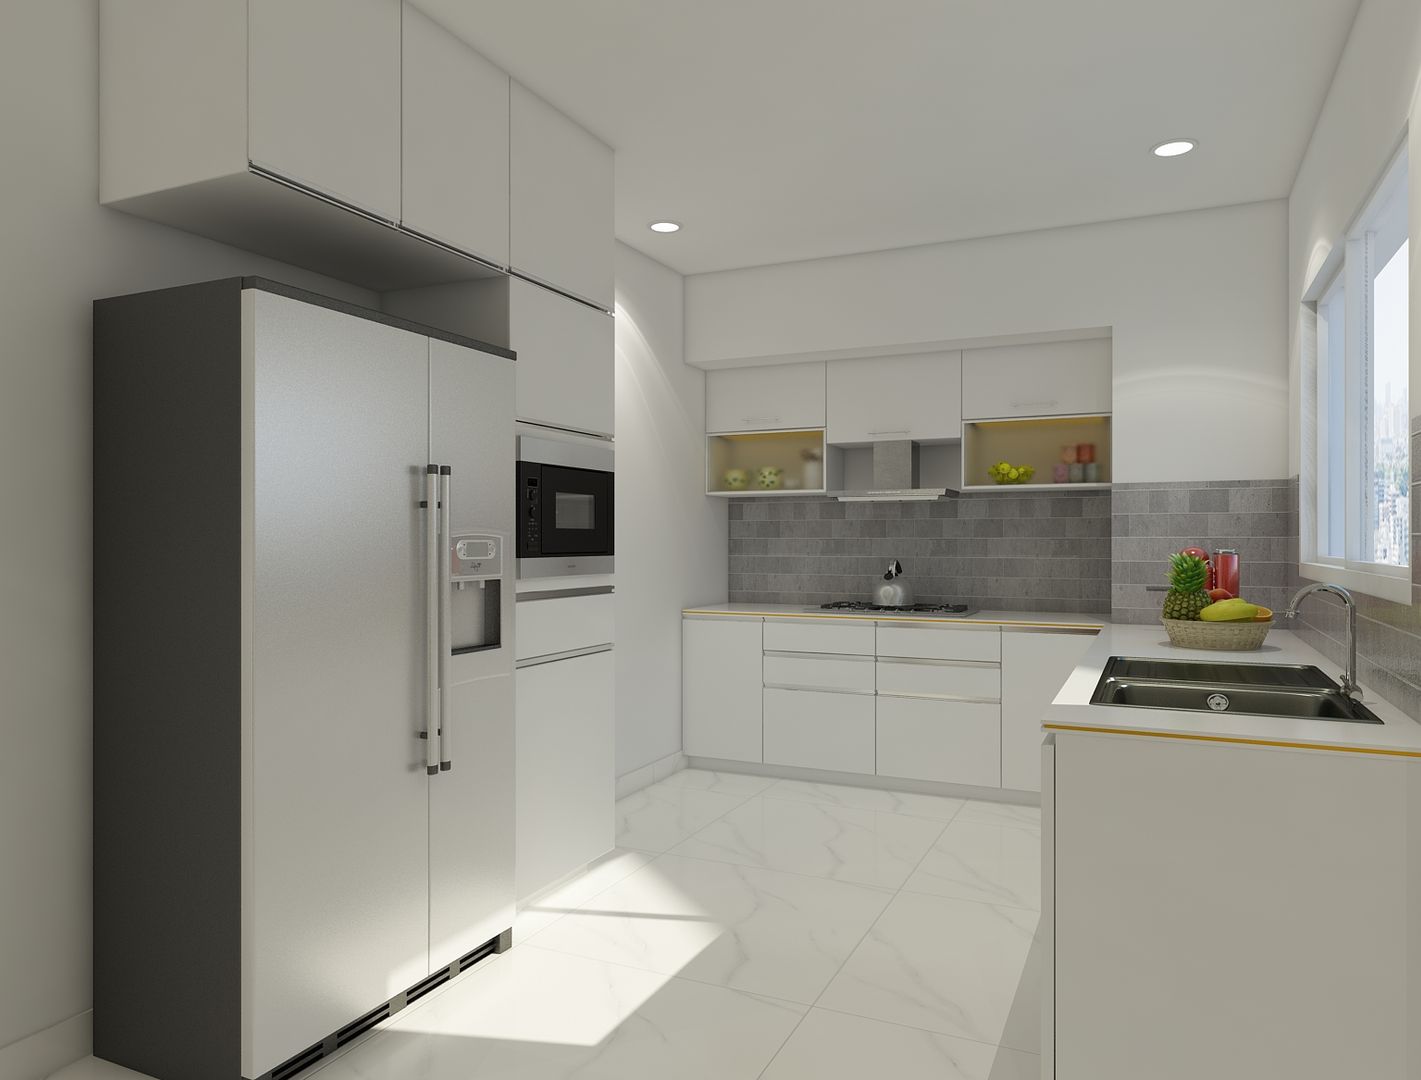 Modular kitchen in white Rhythm And Emphasis Design Studio Modern kitchen